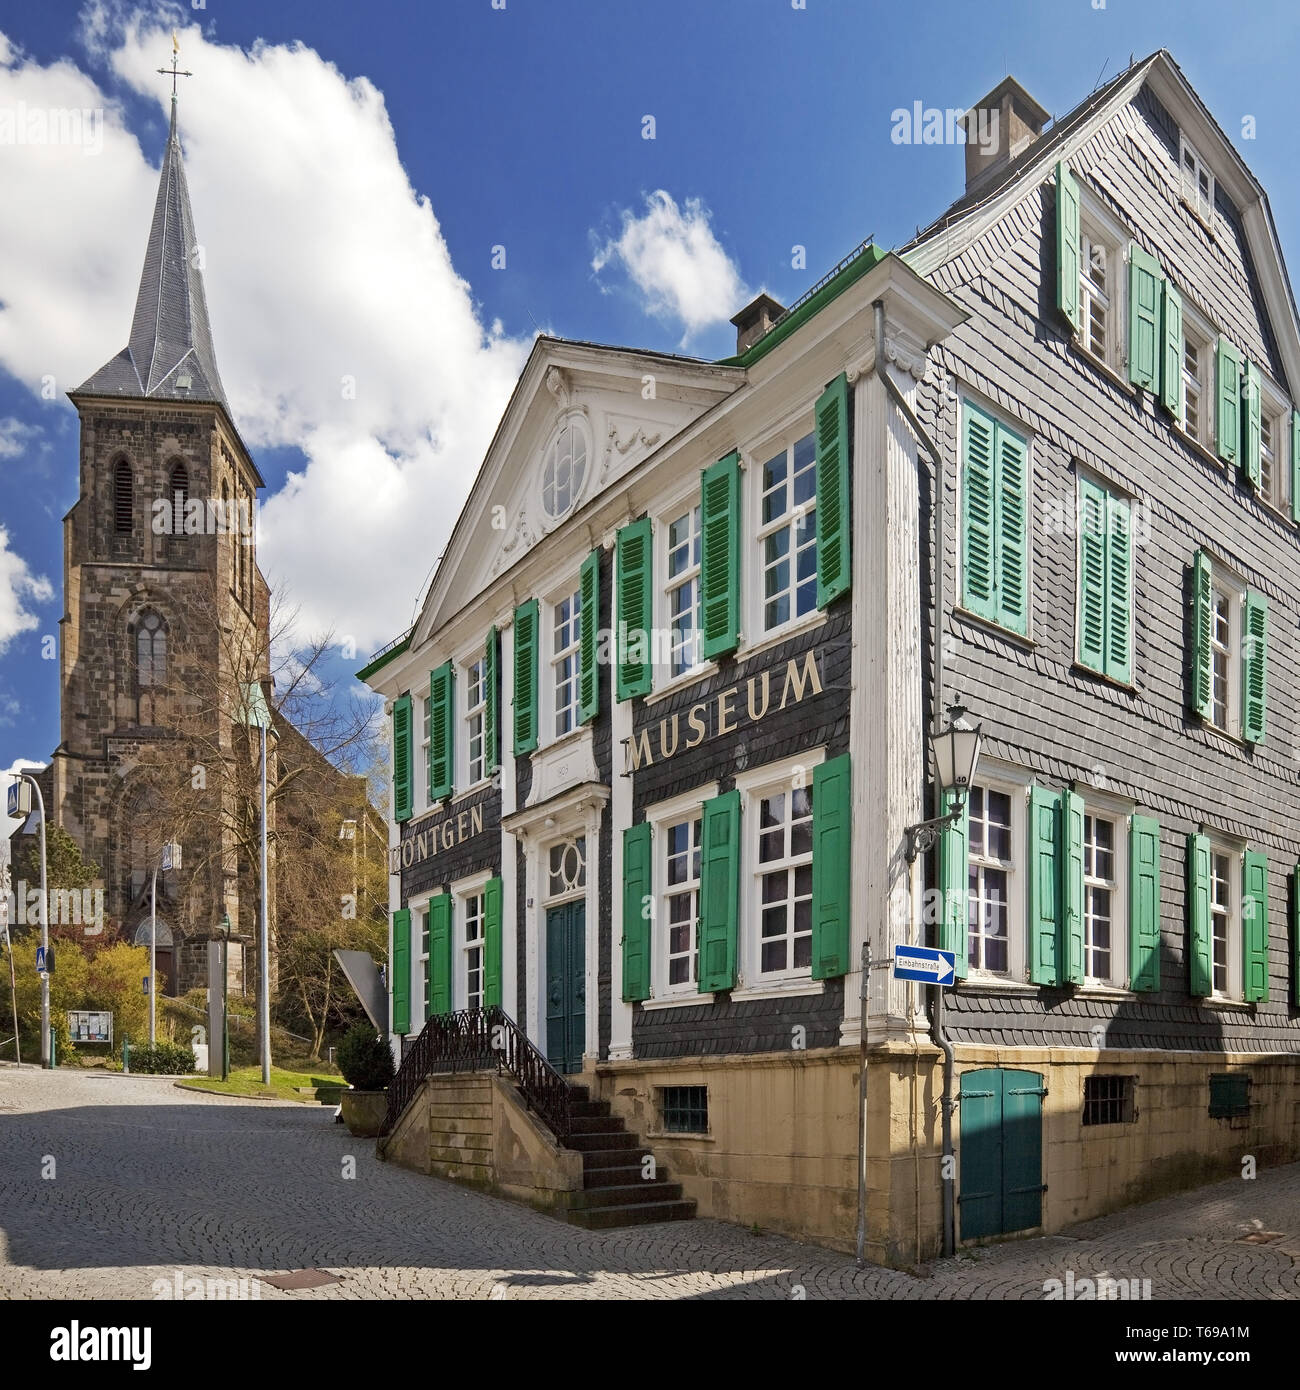 Deutsche Roentgen-Museum mit Kirche St. Bonaventura, Remscheid, Nordrhein-Westfalen, Deutschland Stockfoto